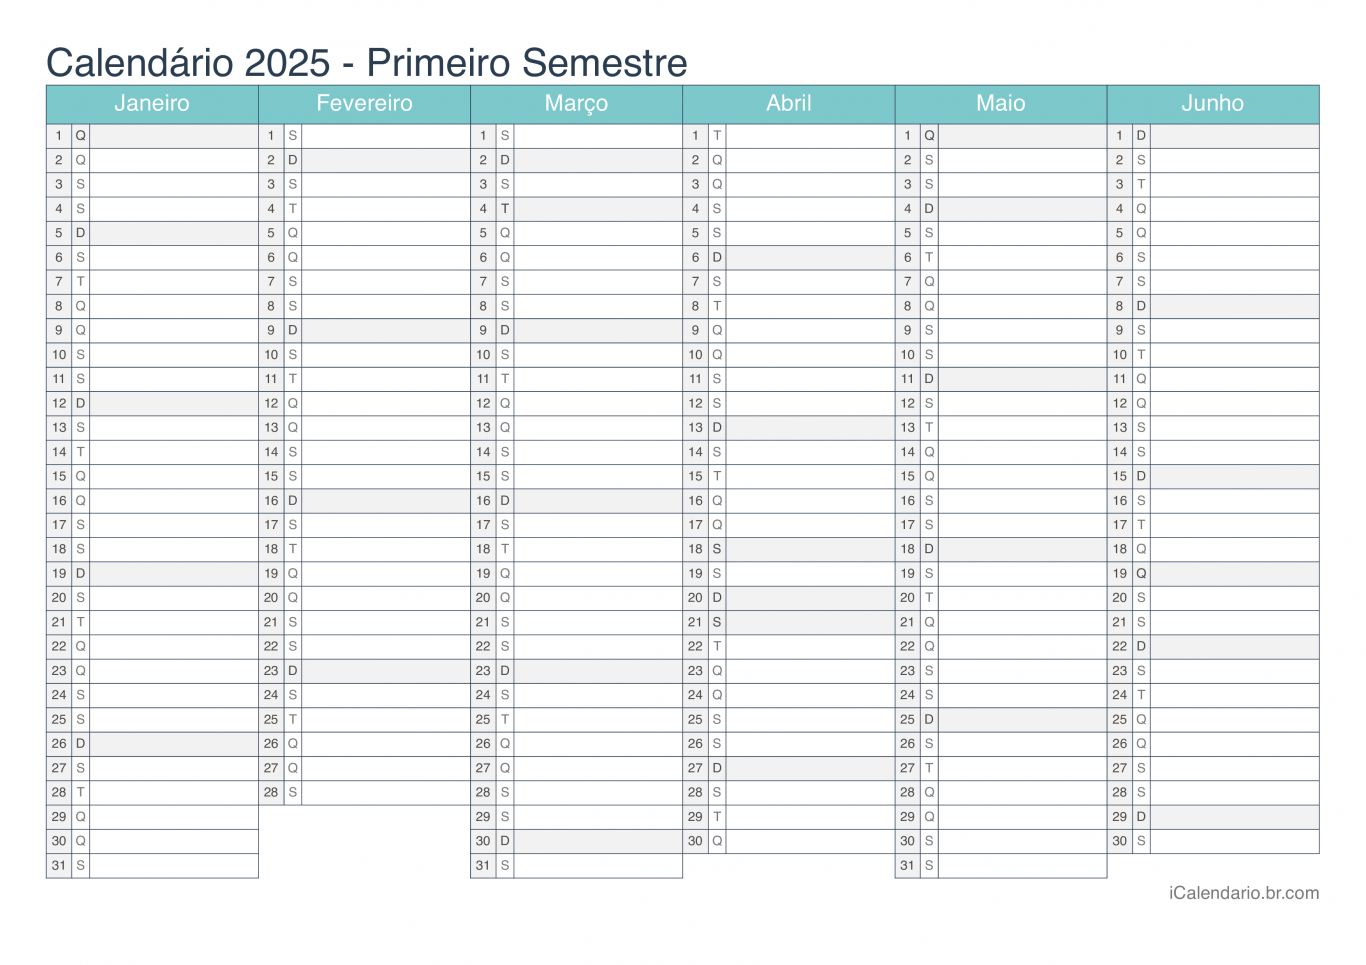 Calendário por semestre 2025 - Turquesa